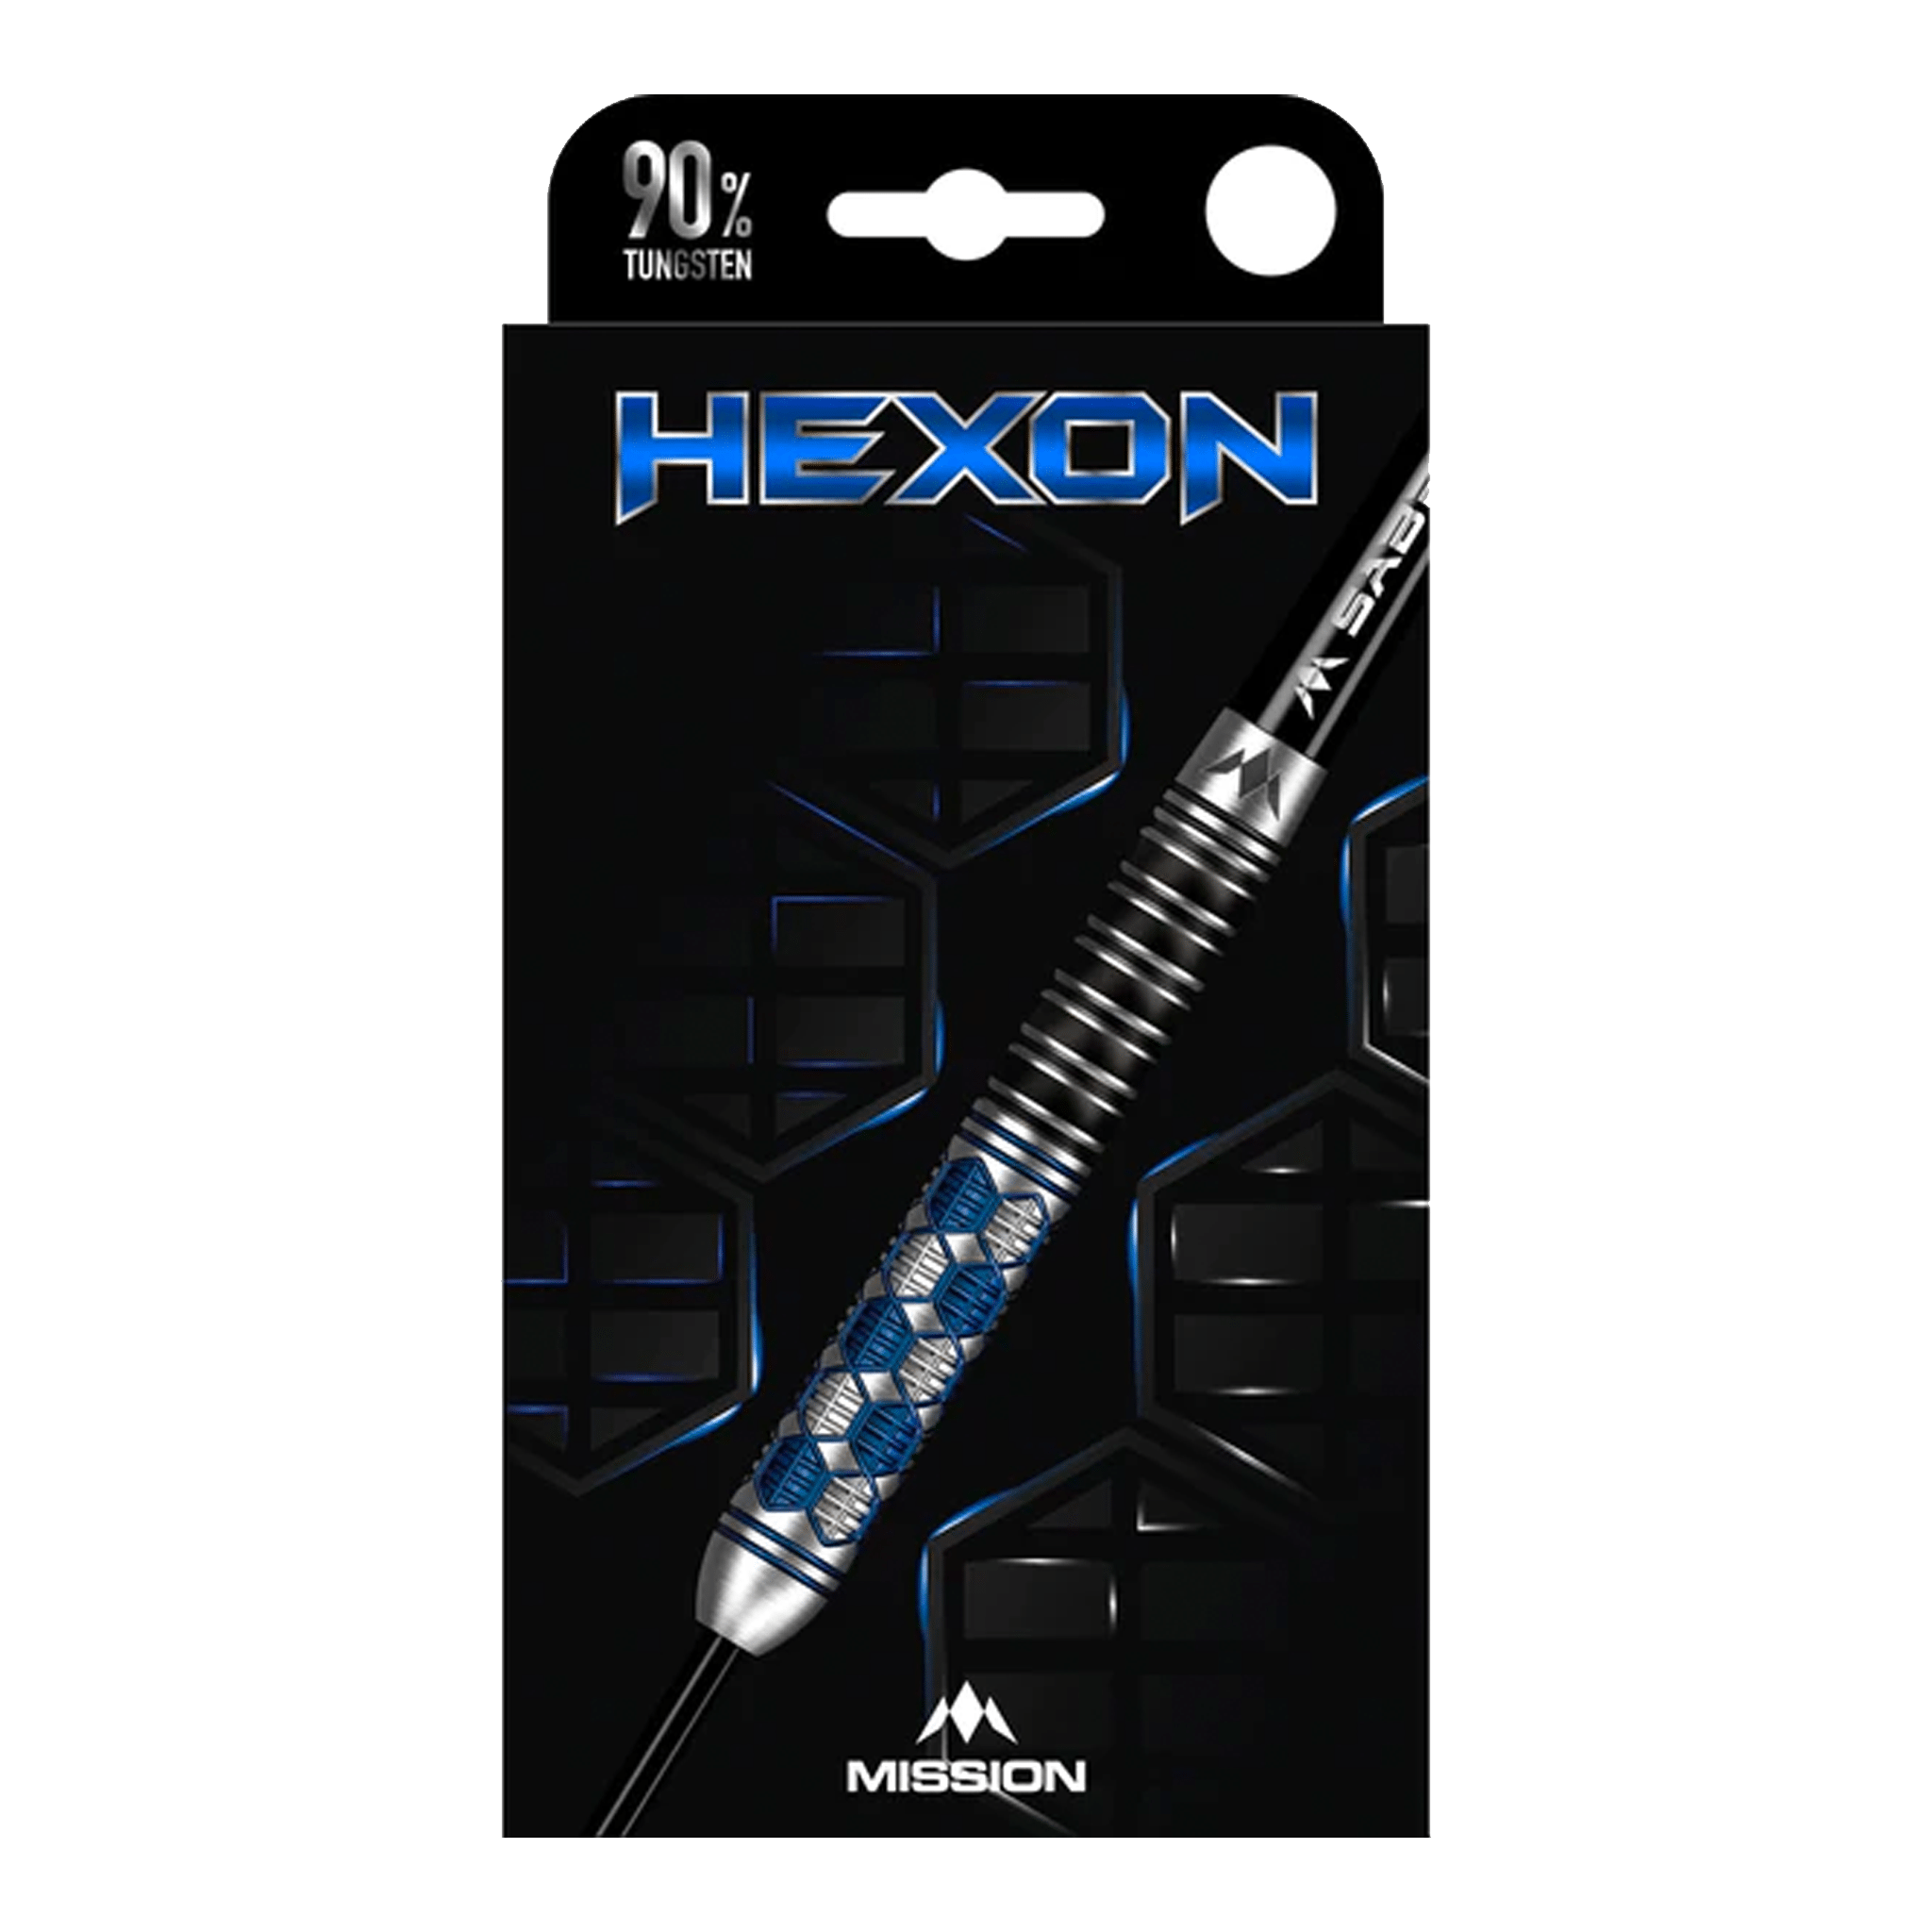 Mission Hexon - 90% Tungsten Steel Tip Darts Darts